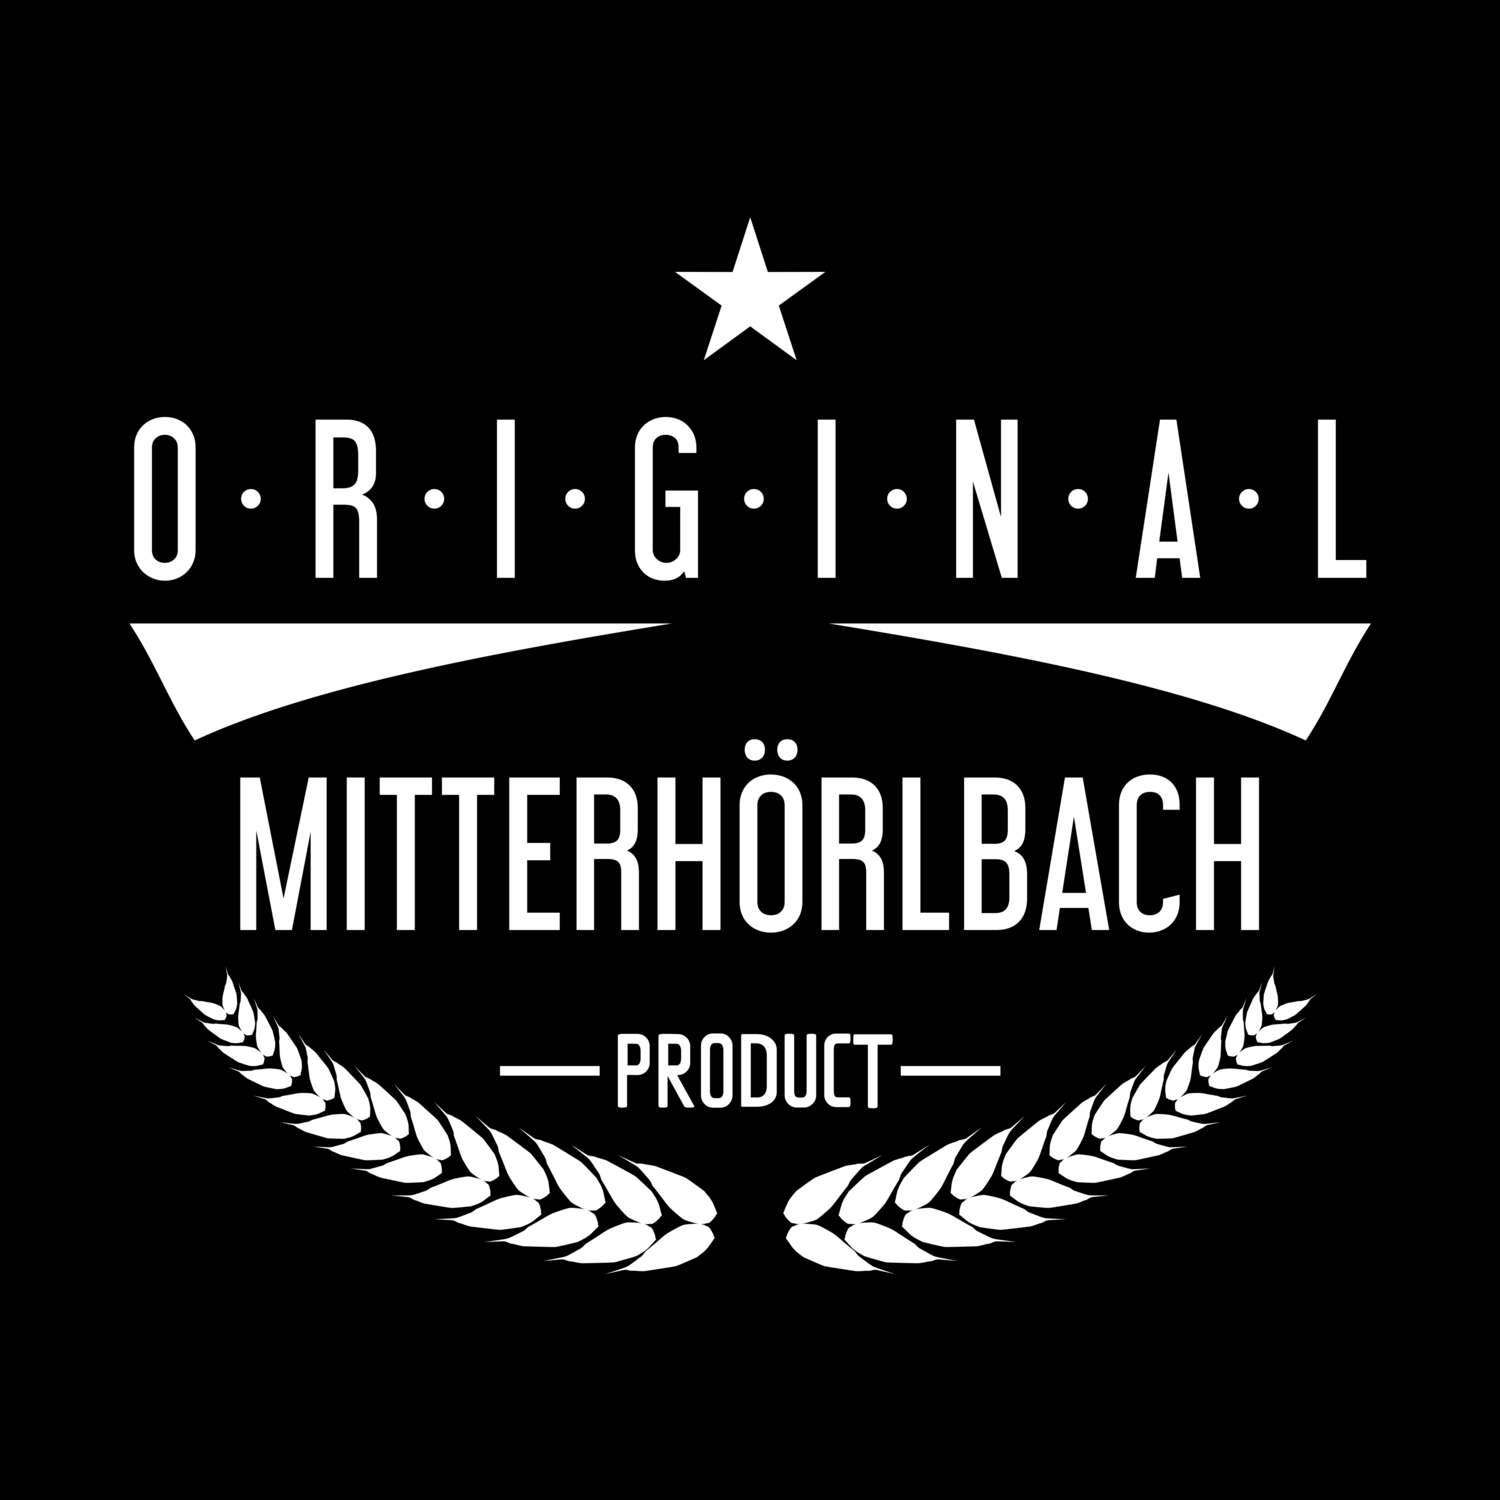 Mitterhörlbach T-Shirt »Original Product«